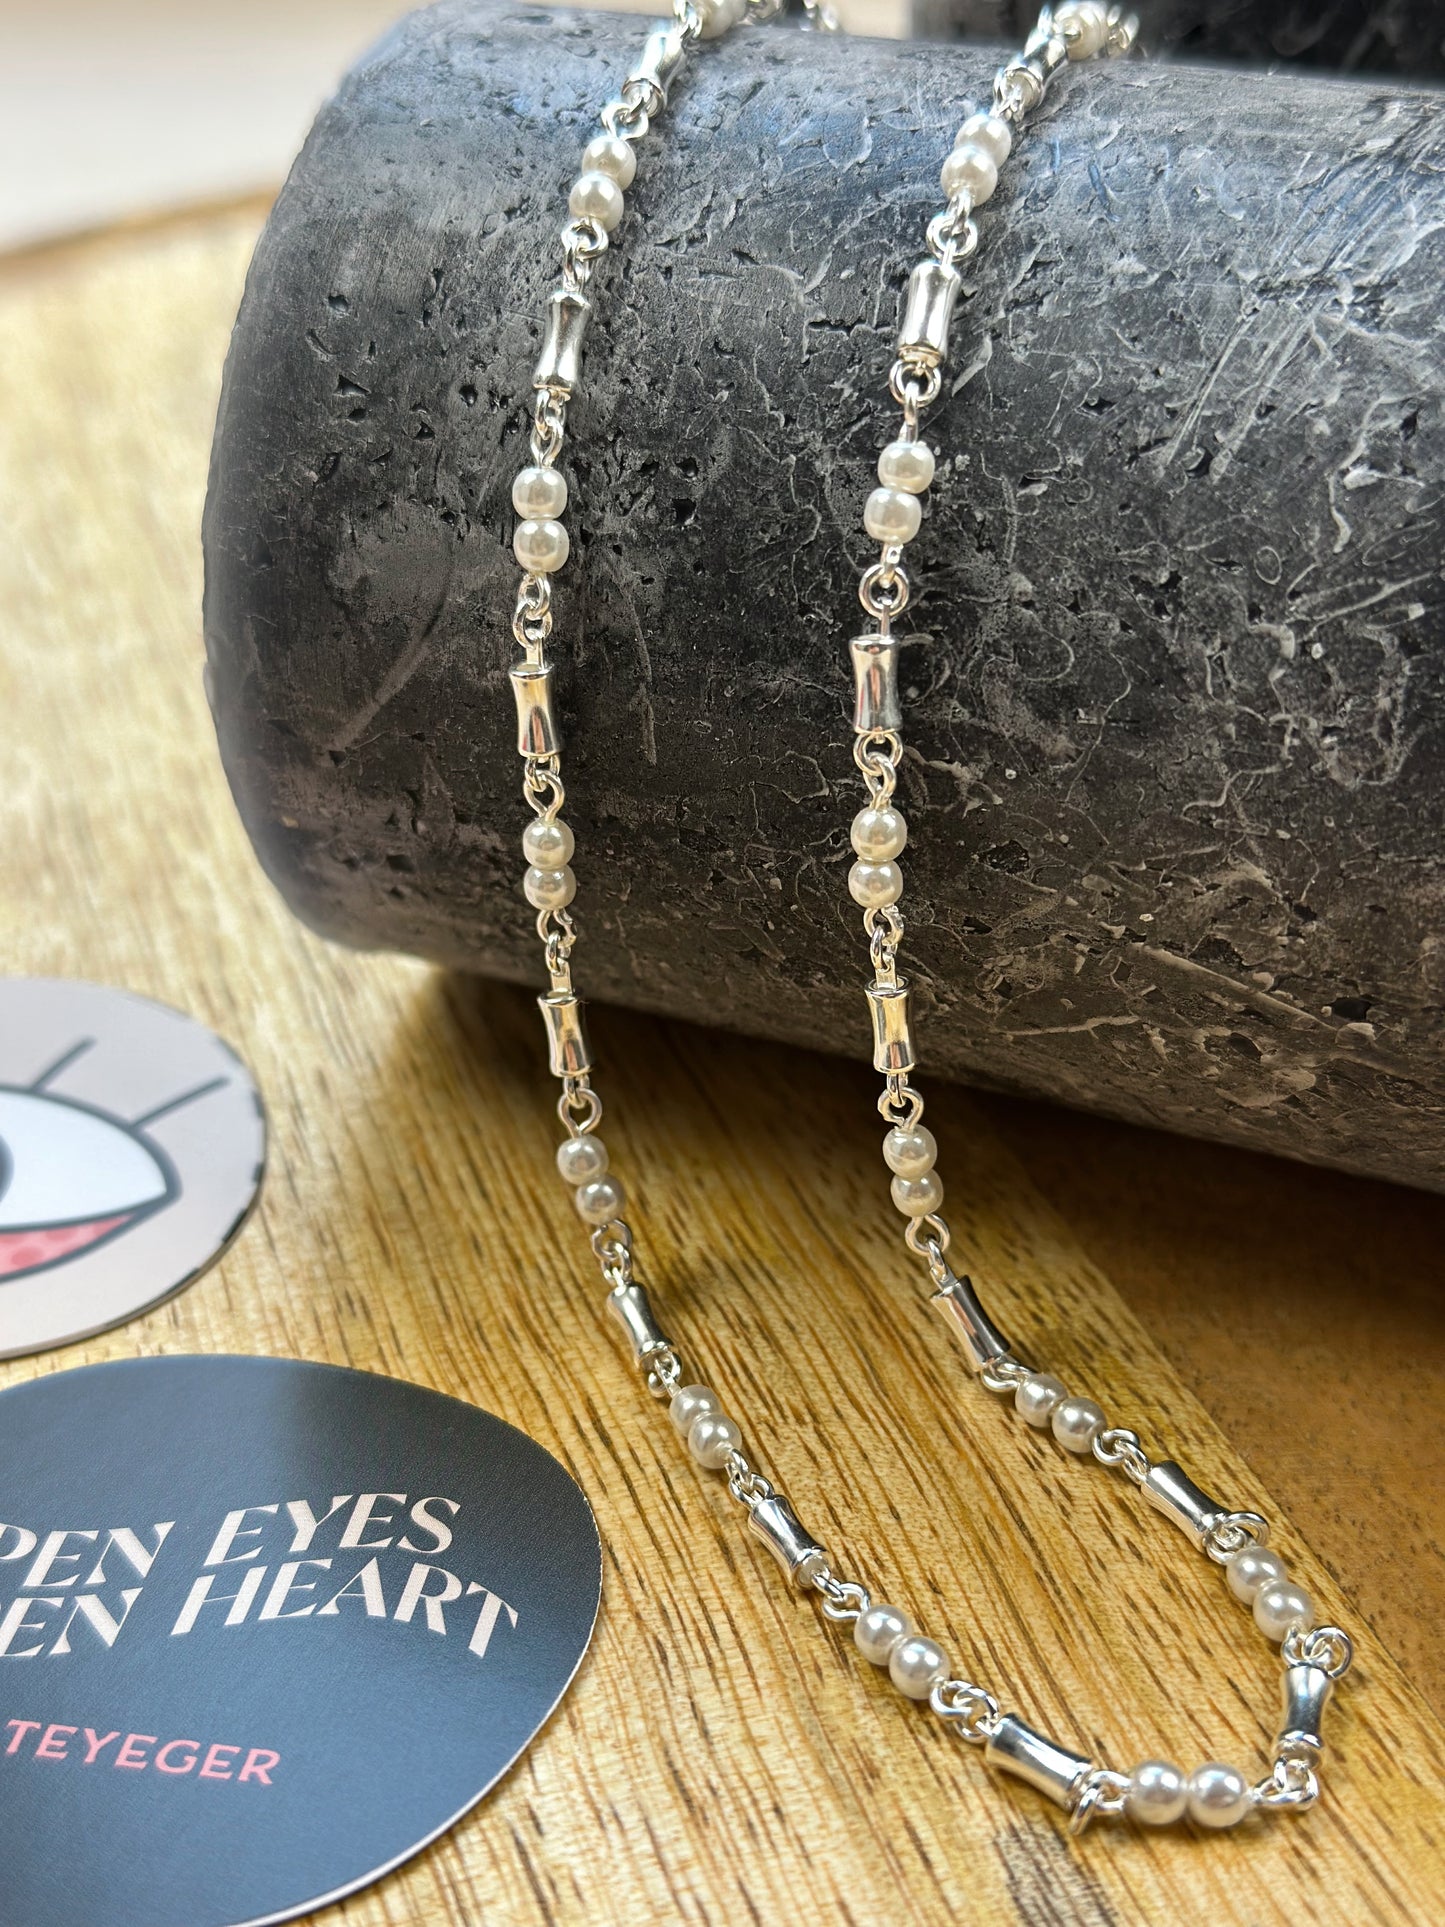 silberne Kette mit Perlen und Schmuckelementen ist über einen zylinderförmigen Gegenstand drapiert